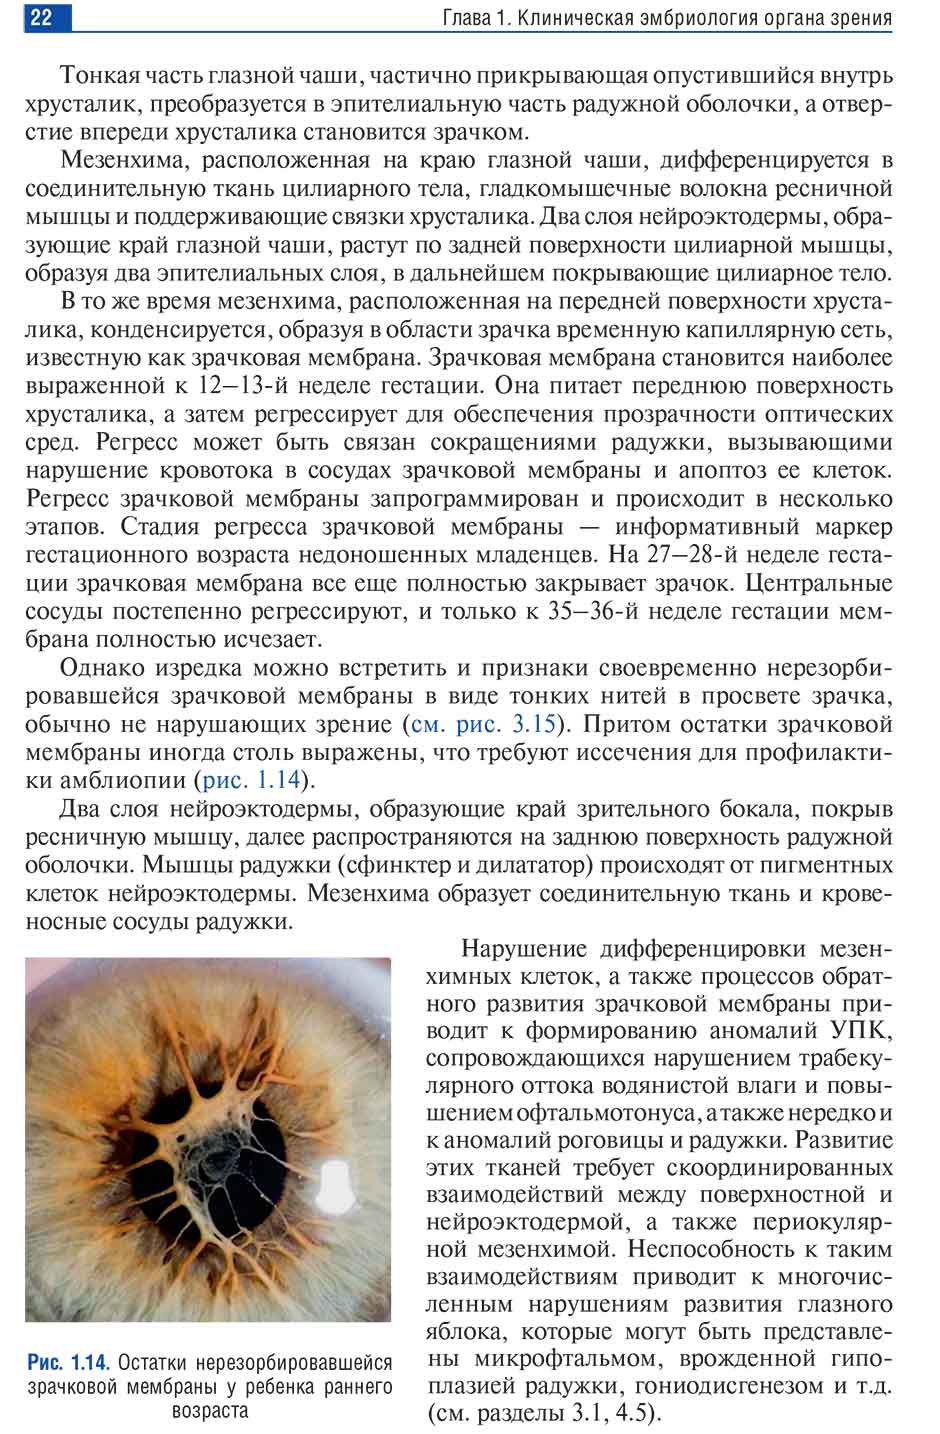 Пример страницы из книги  "Неонатальная офтальмология: руководство для врачей" - Бржеский В. В.